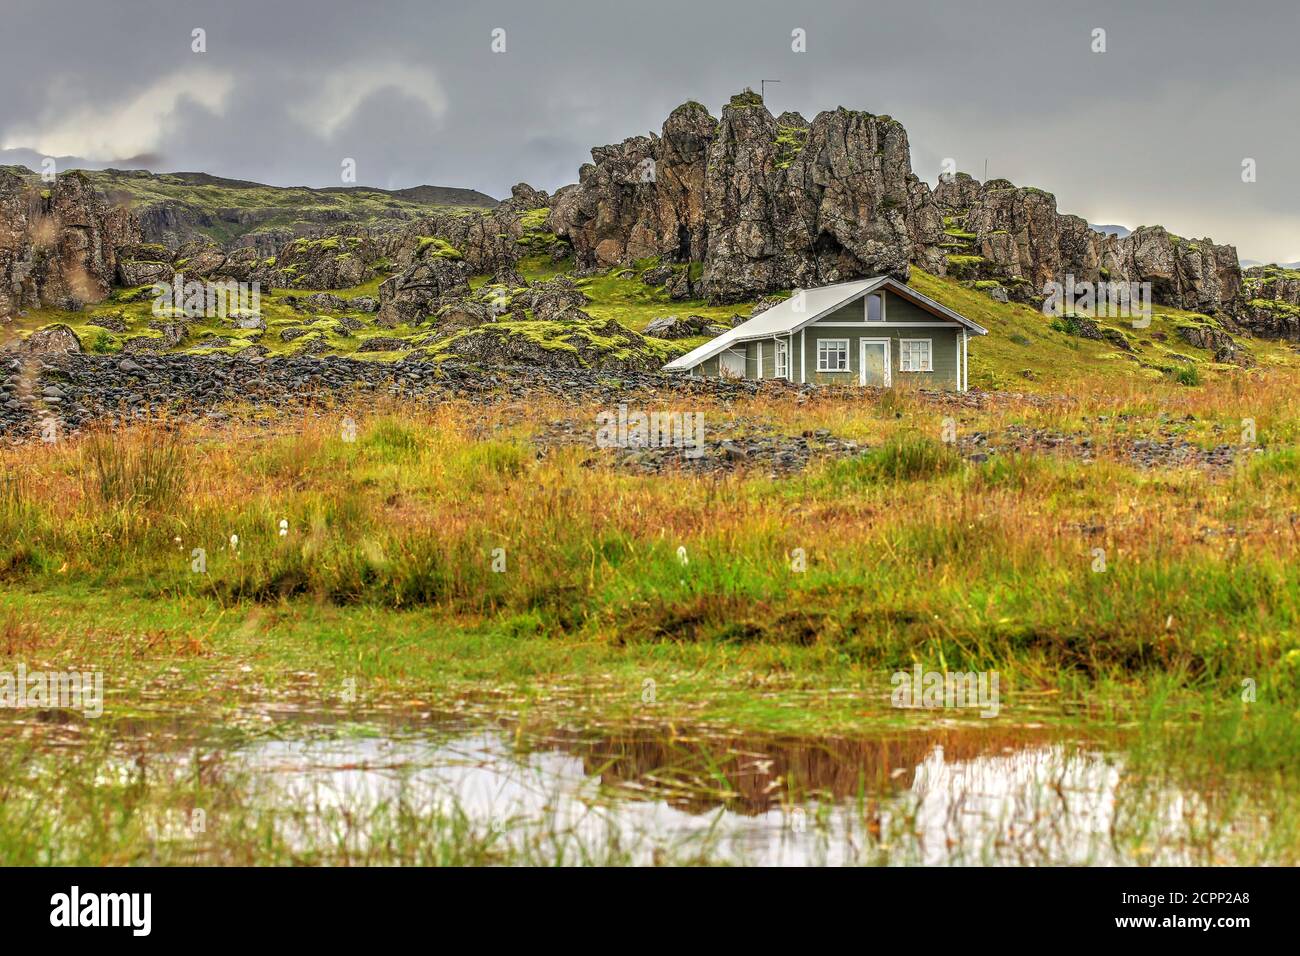 Maison en bois isolée dans un paysage pittoresque dans le sud de l'Islande. Banque D'Images